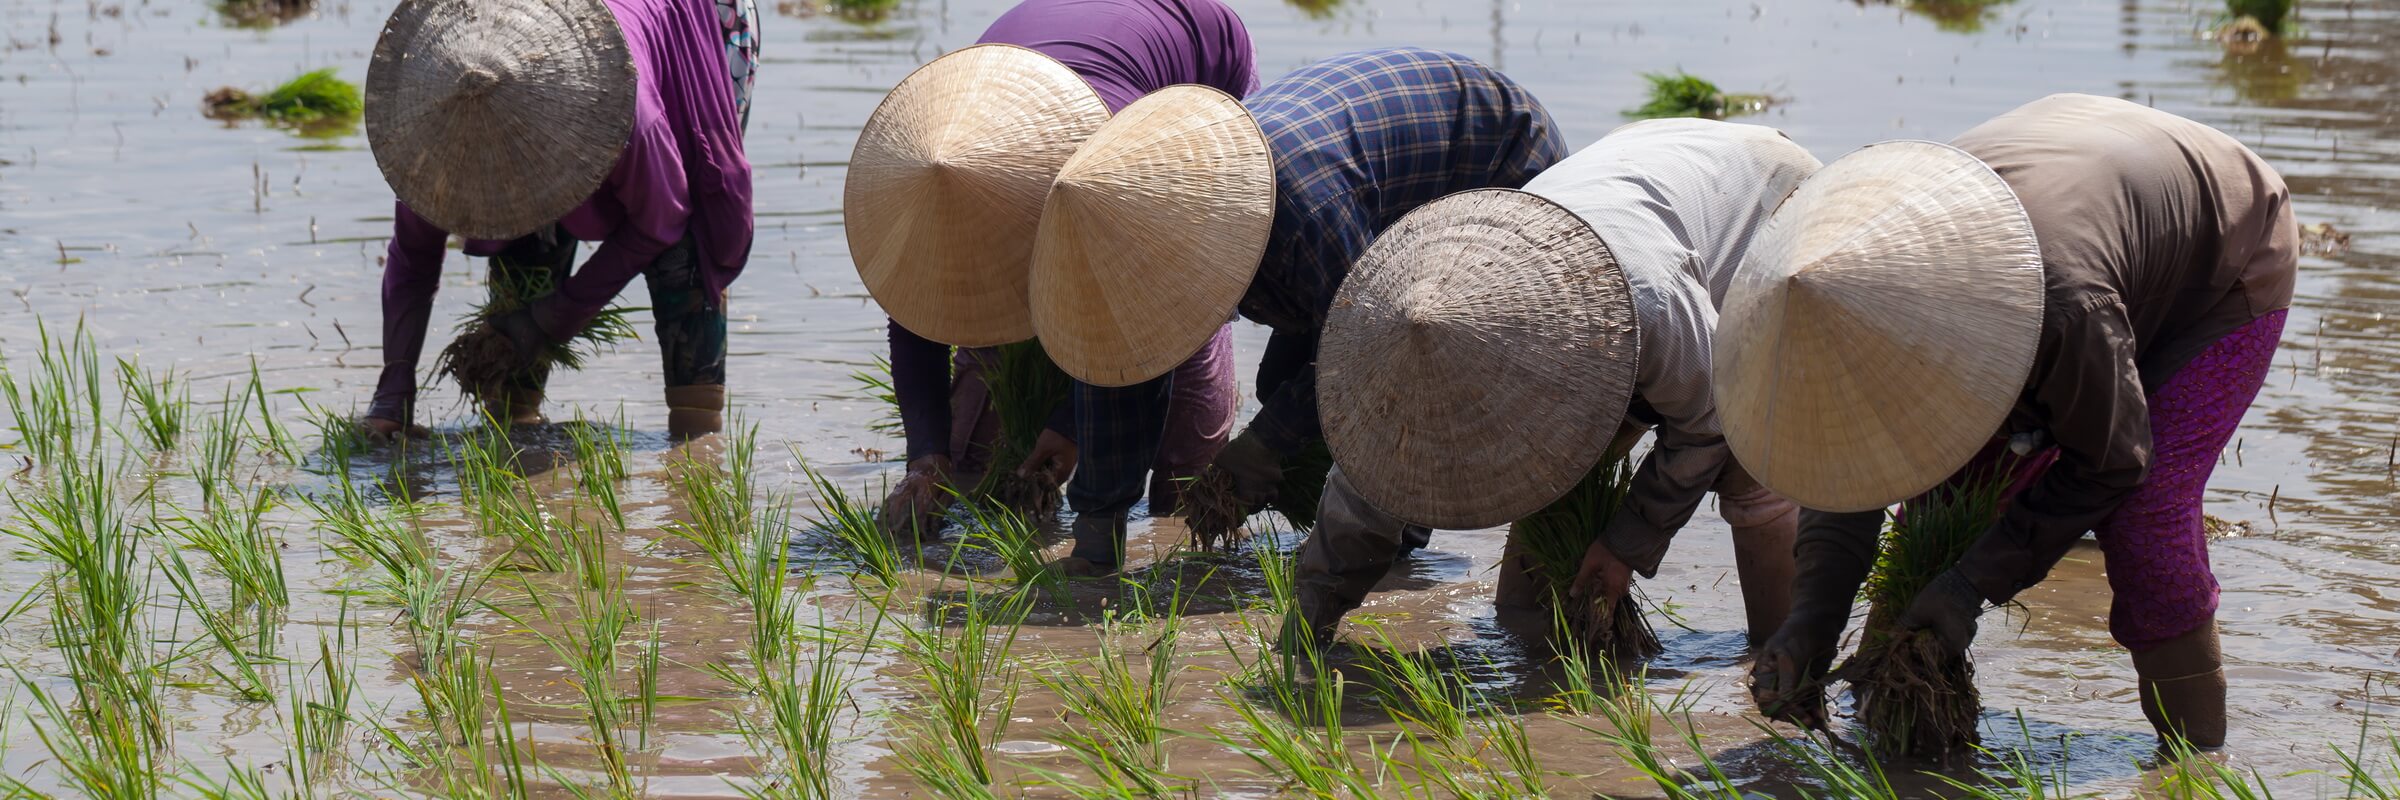 Reisanbau in Vietnam ist Gemeinschaftsarbeit, oft müssen Dörfer, Distrikte und ganze Provinzen dafür koordiniert zusammenarbeiten.